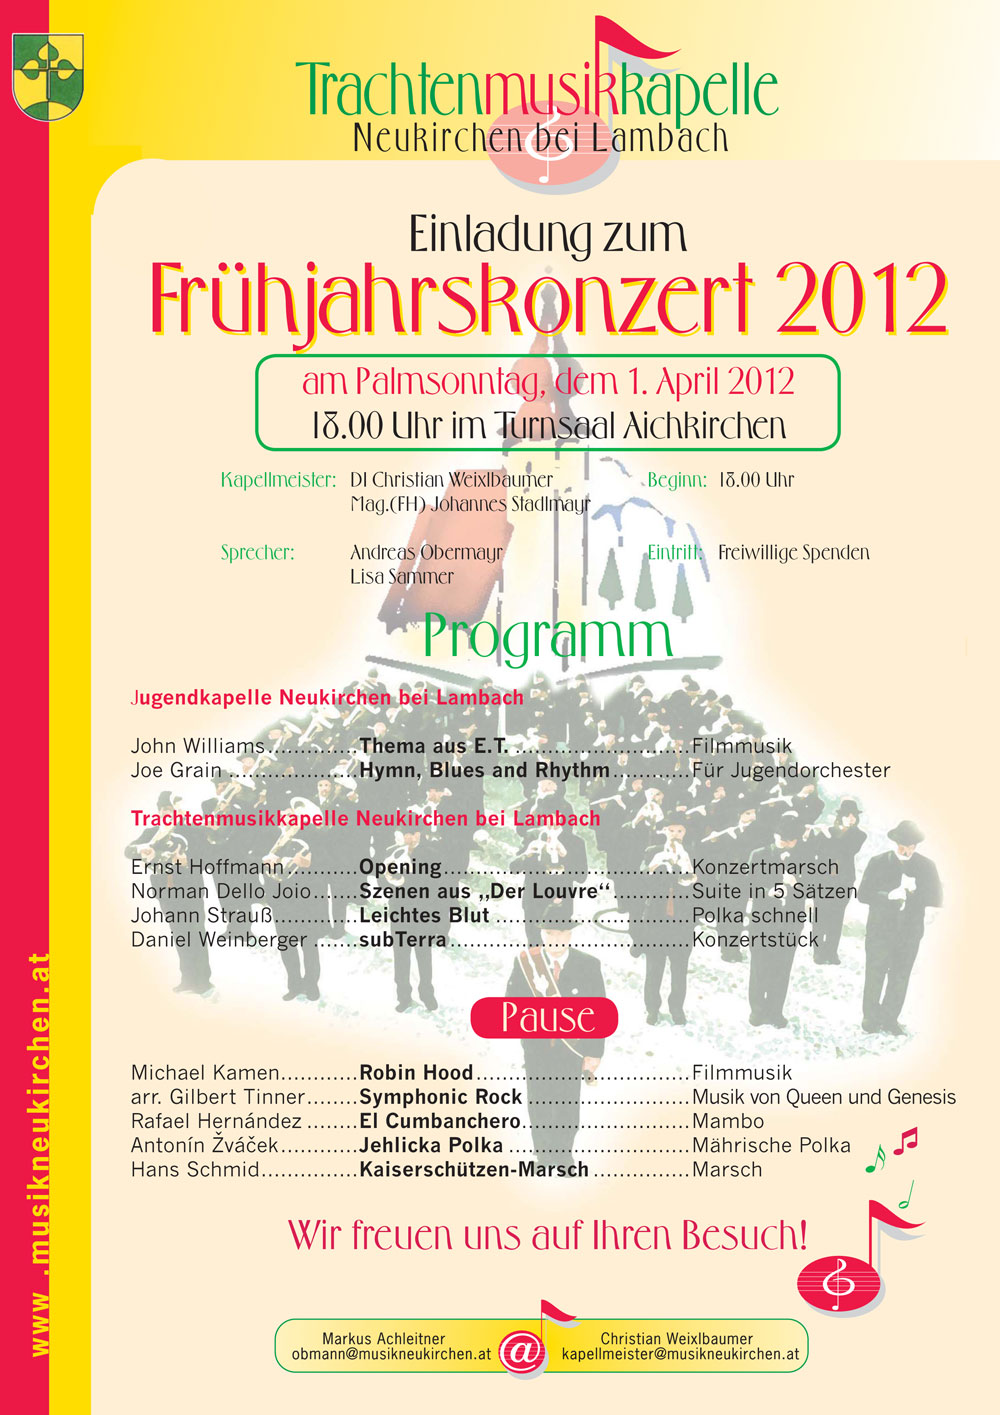 Frühjahrskonzert 2012 in Aichkirchen